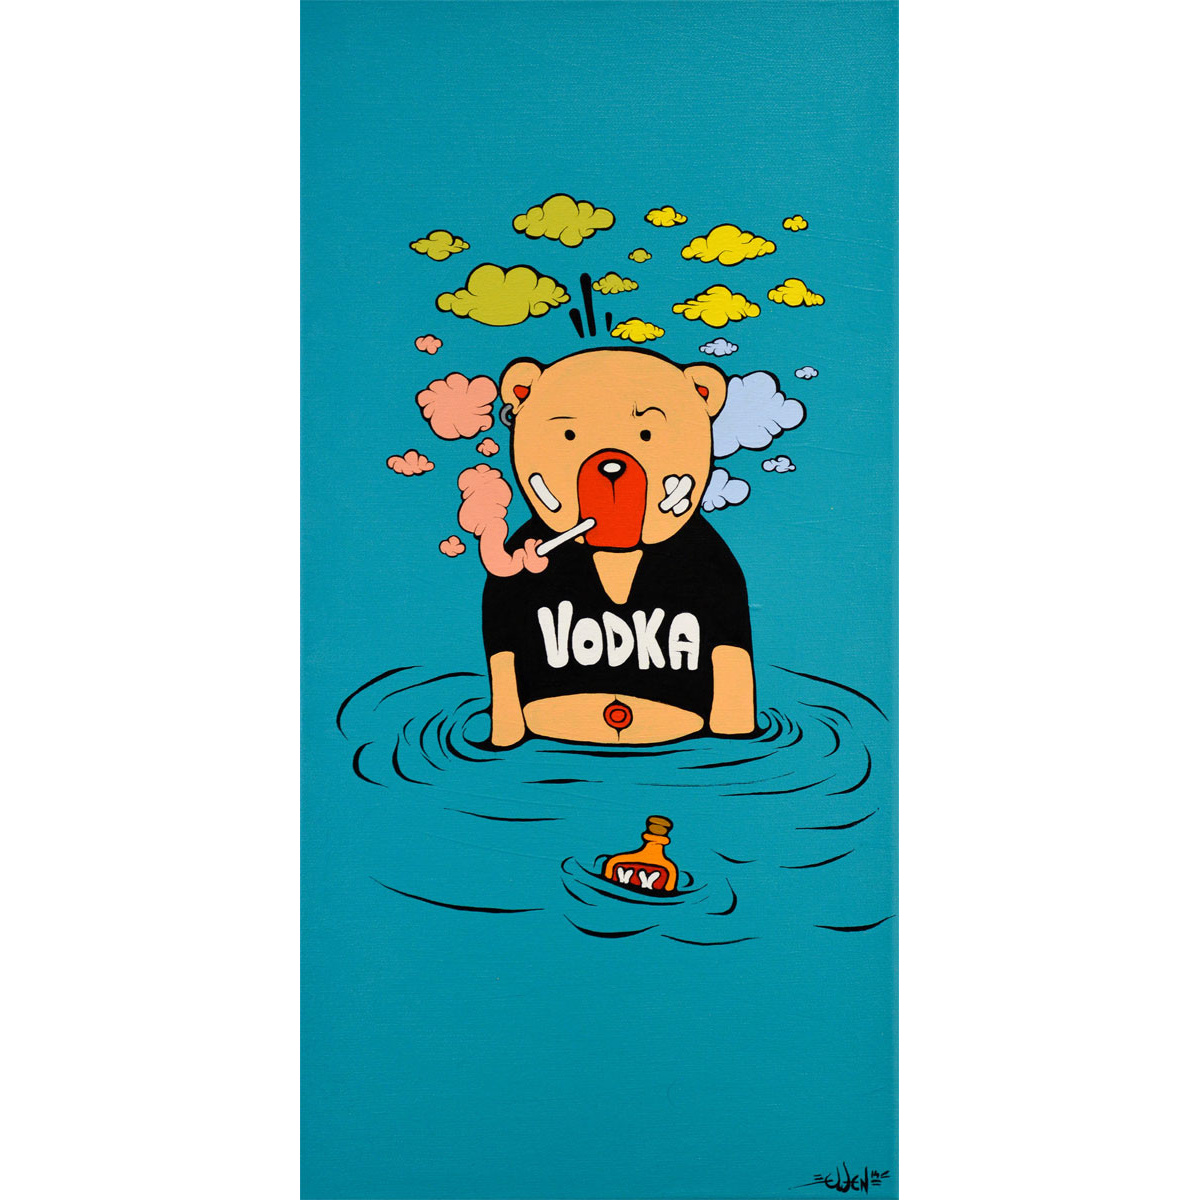 Drowning in Vodka von Ewen Gur